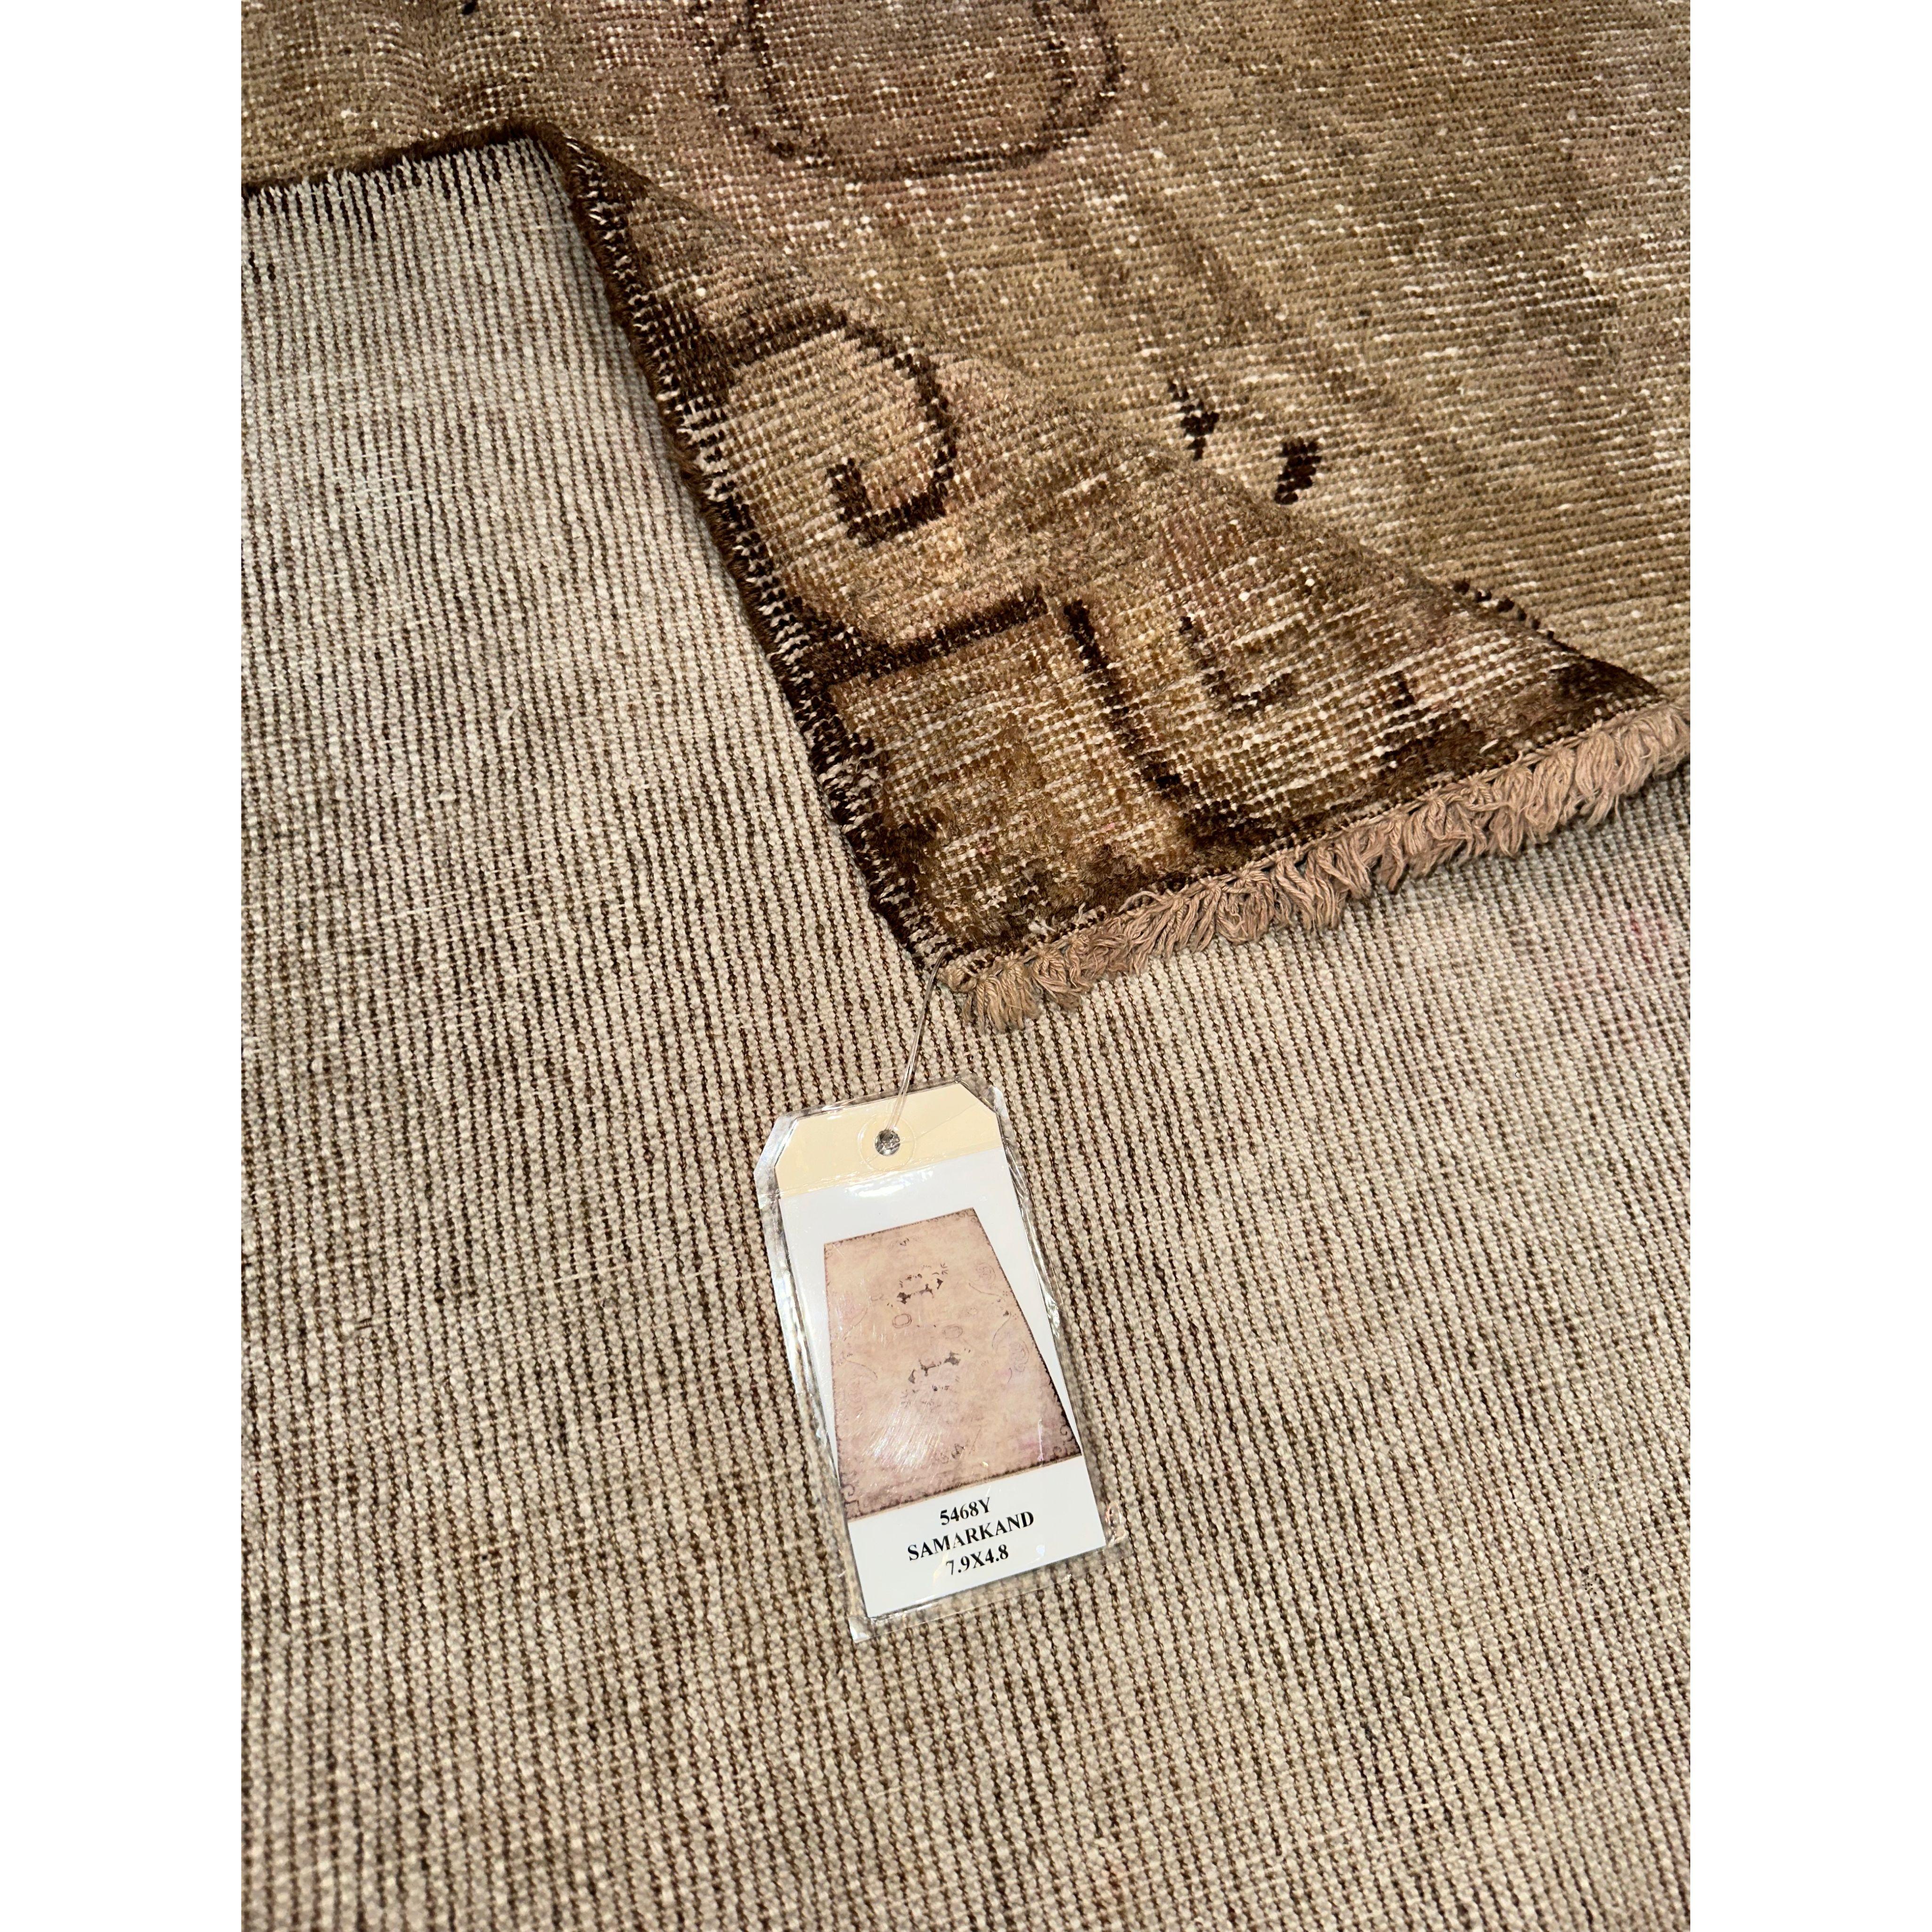 Antike Samarkand-Teppiche: Die Wüstenoase Khotan war eine wichtige Station auf der Seidenstraße. Die Einwohner von Khotan waren erfahrene Teppichweber, die hochwertige antike Teppiche für den internen Gebrauch und den Handel herstellten.